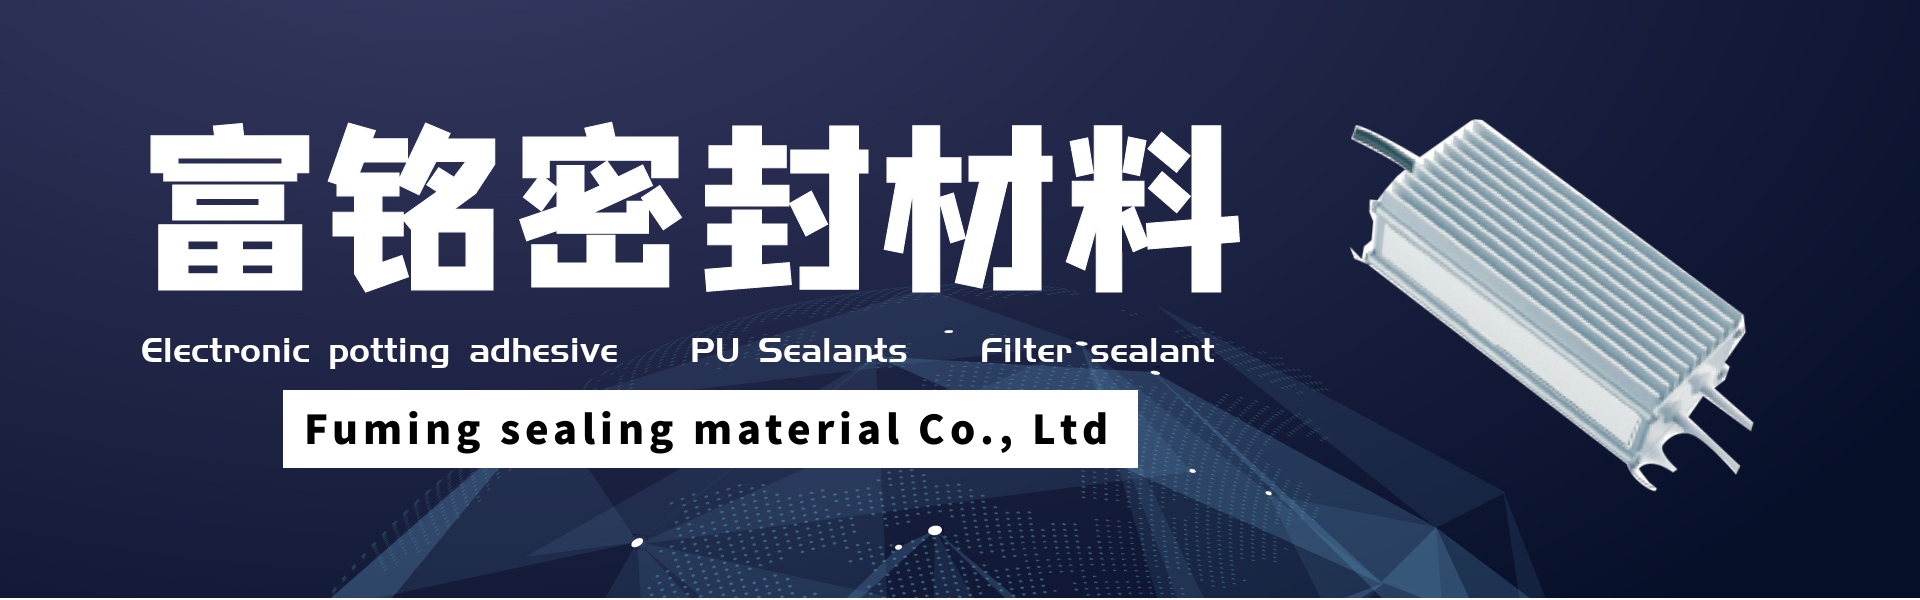 전자 포팅 접착제, pu 실란트, 필터 실란트,Dongguan fuming sealing material Co., Ltd